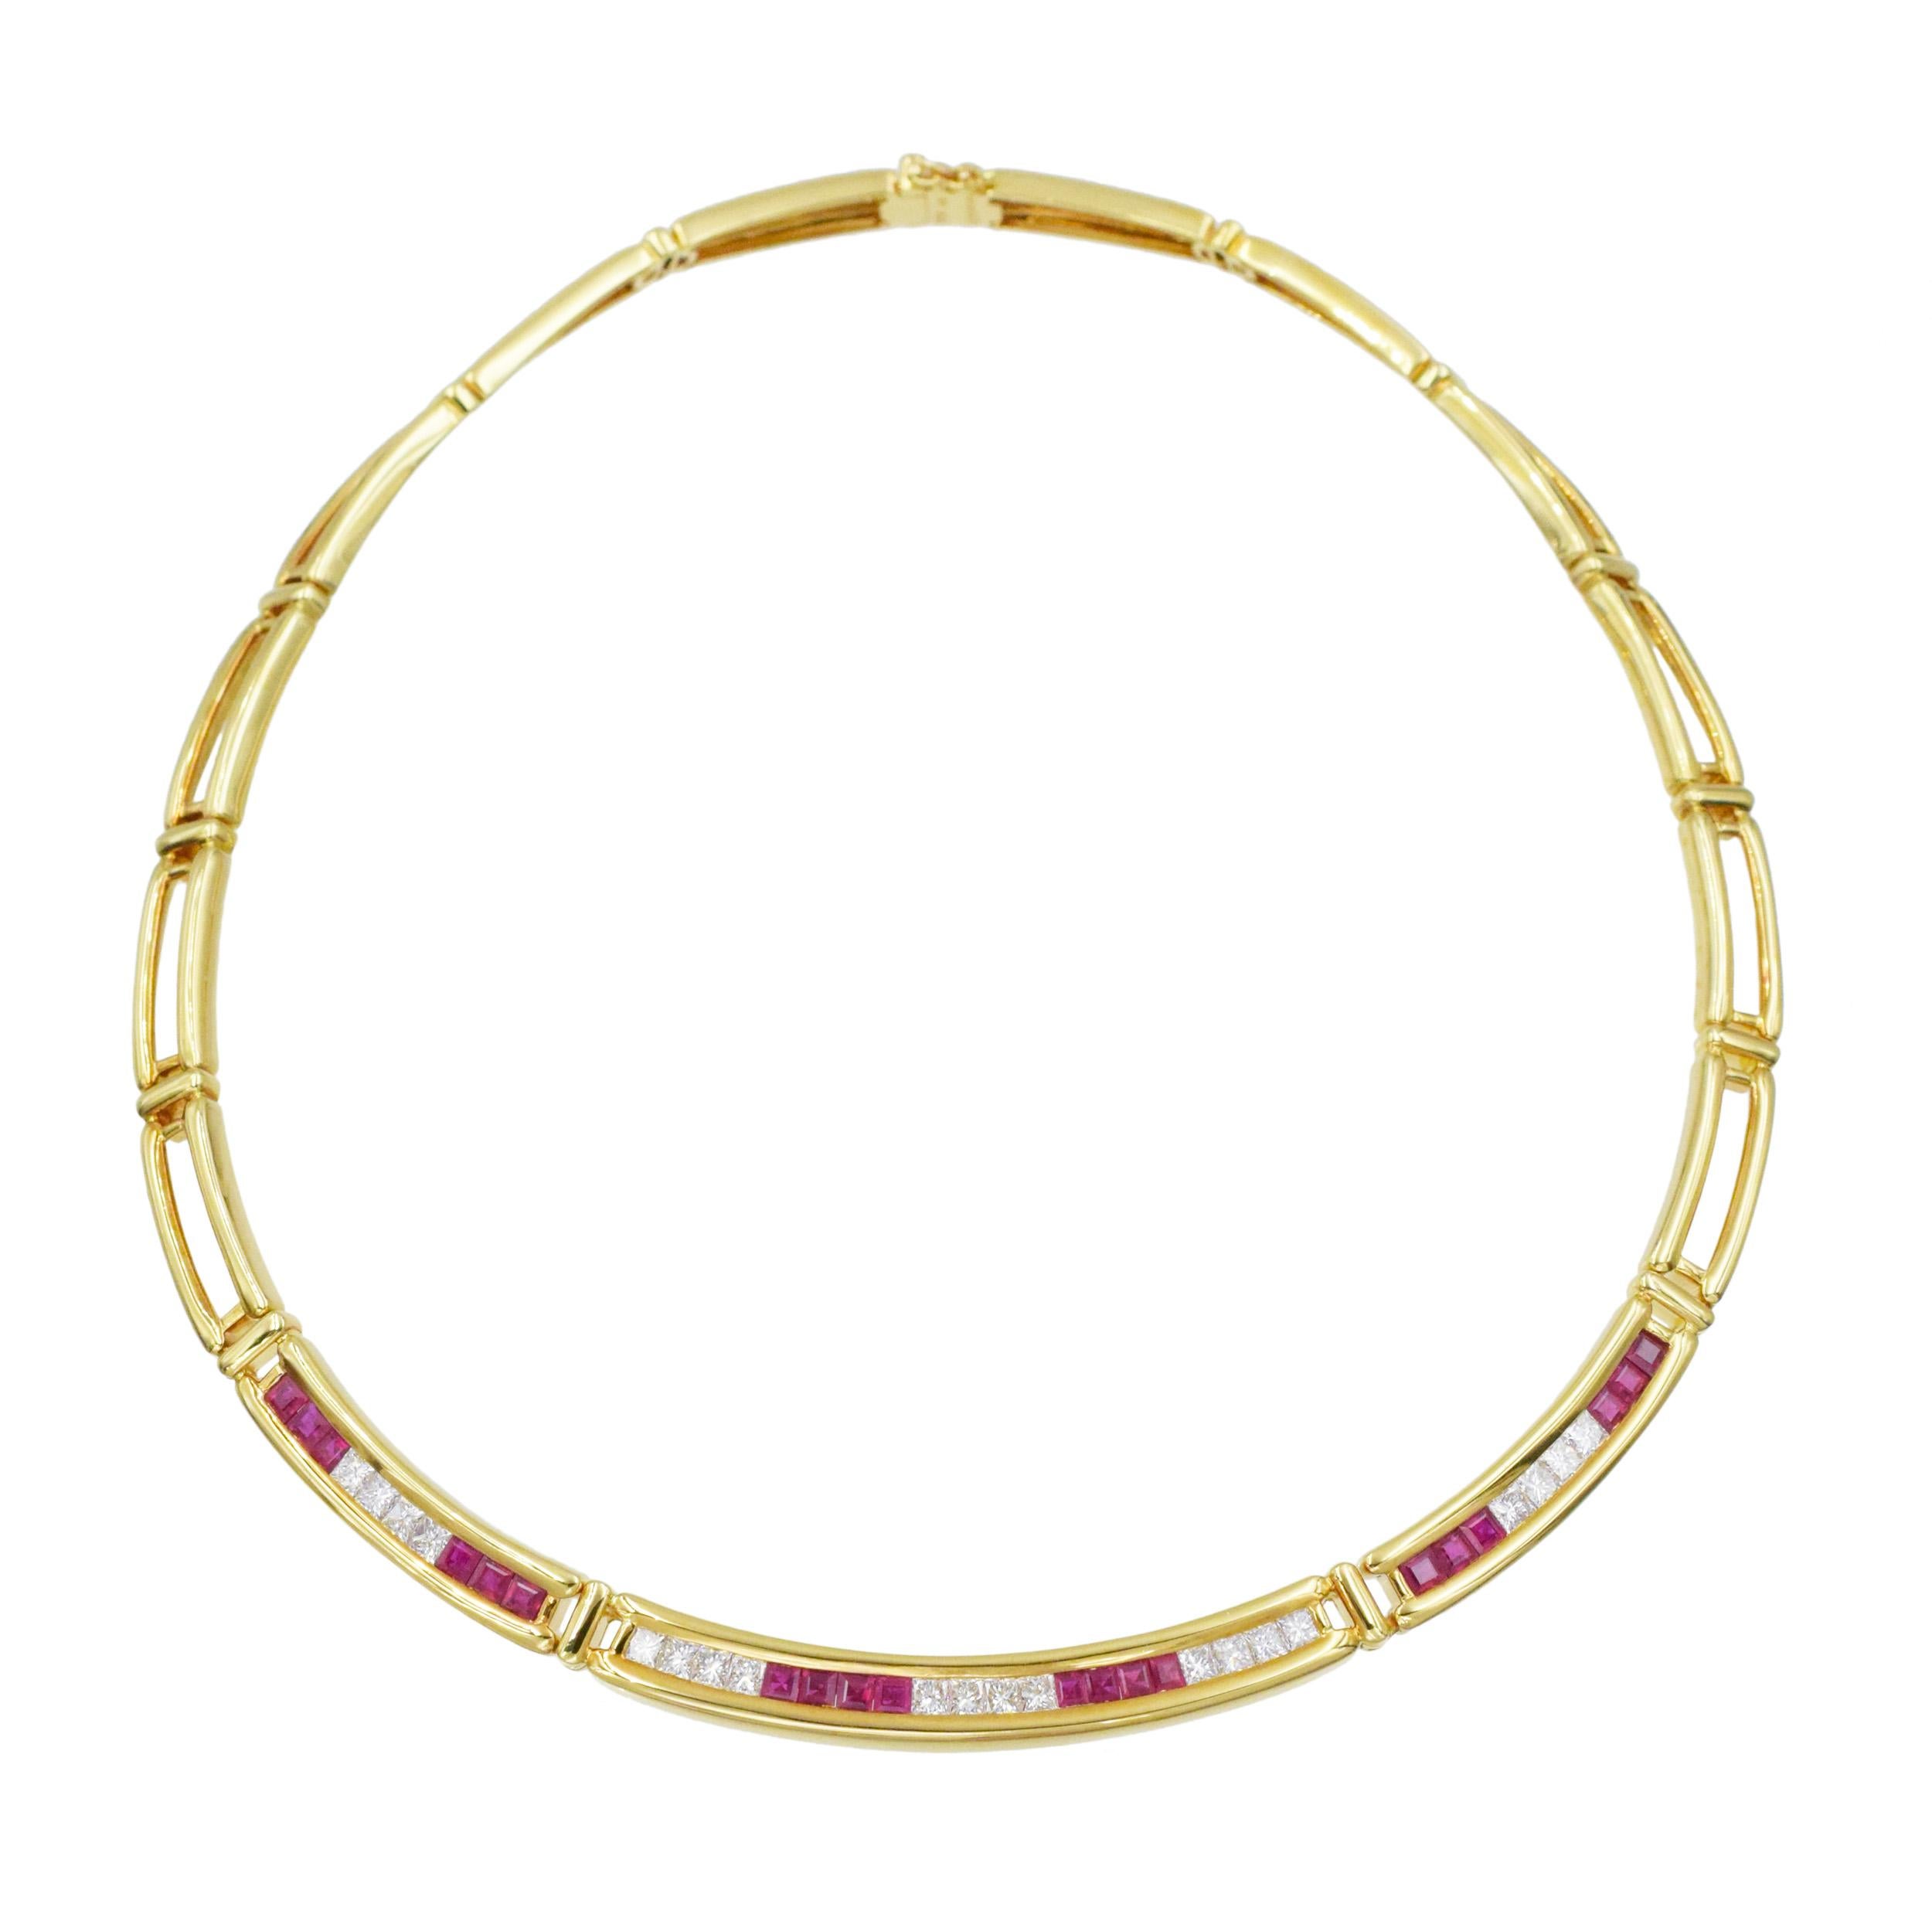 Collier ras-de-cou en diamants et rubis de Tiffany&Co. en or jaune 18 carats. Le collier est composé de 12
liens rectangulaires ouverts et 3 liens sertis de diamants et de rubis. Il y a 20 rubis de taille carrée d'un poids total d'environ 3,00ct, et